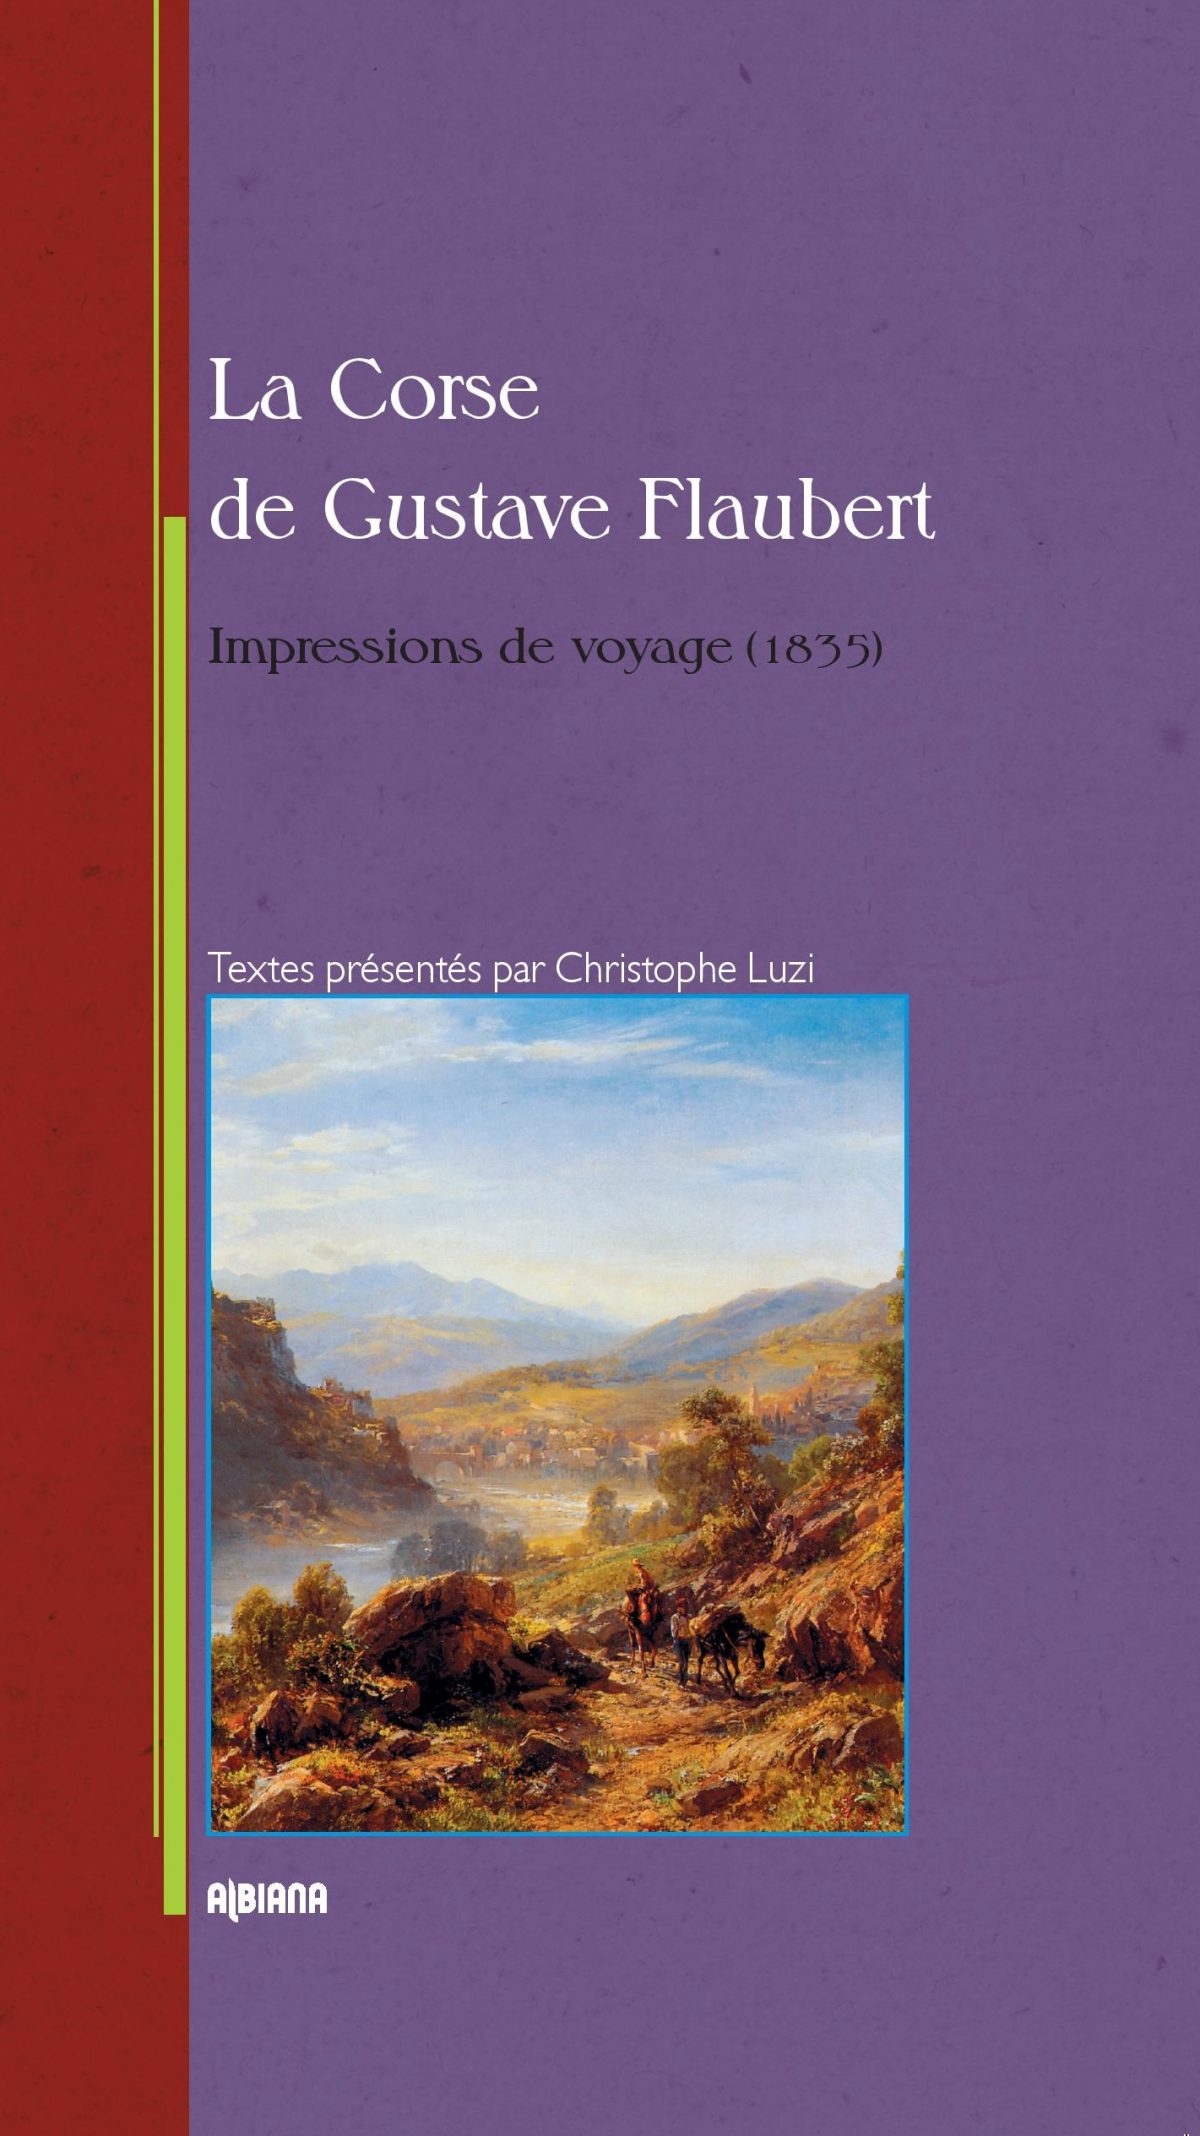 La Corse Gustave Flaubert Impression de voyage, Ajaccio : Albiana, 2016.